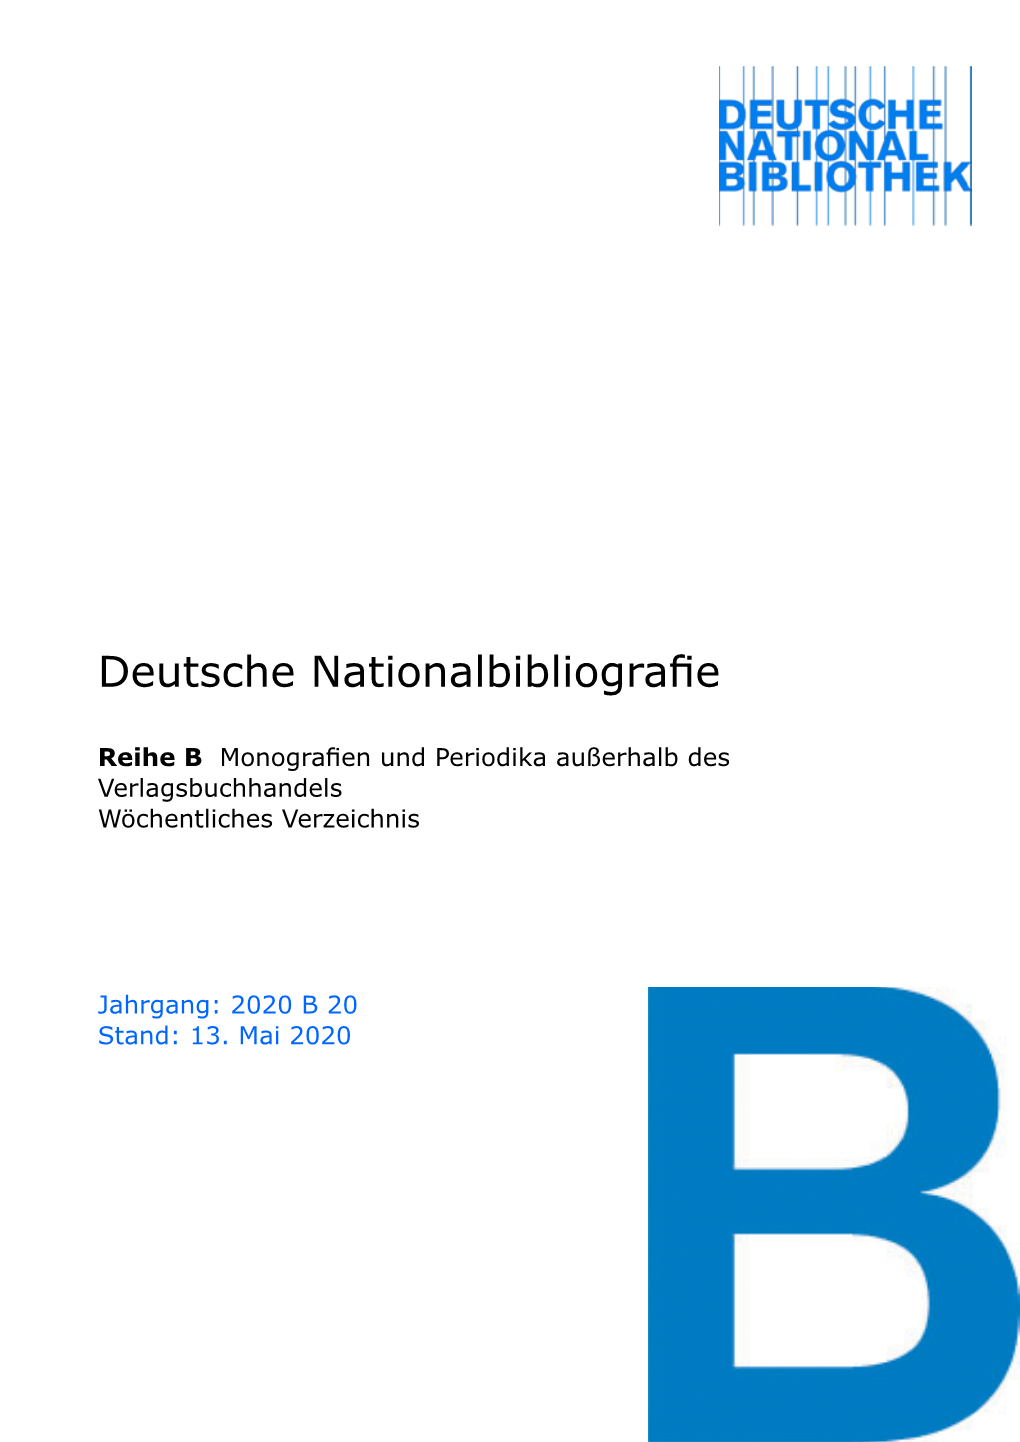 Deutsche Nationalbibliografie 2020 B 20